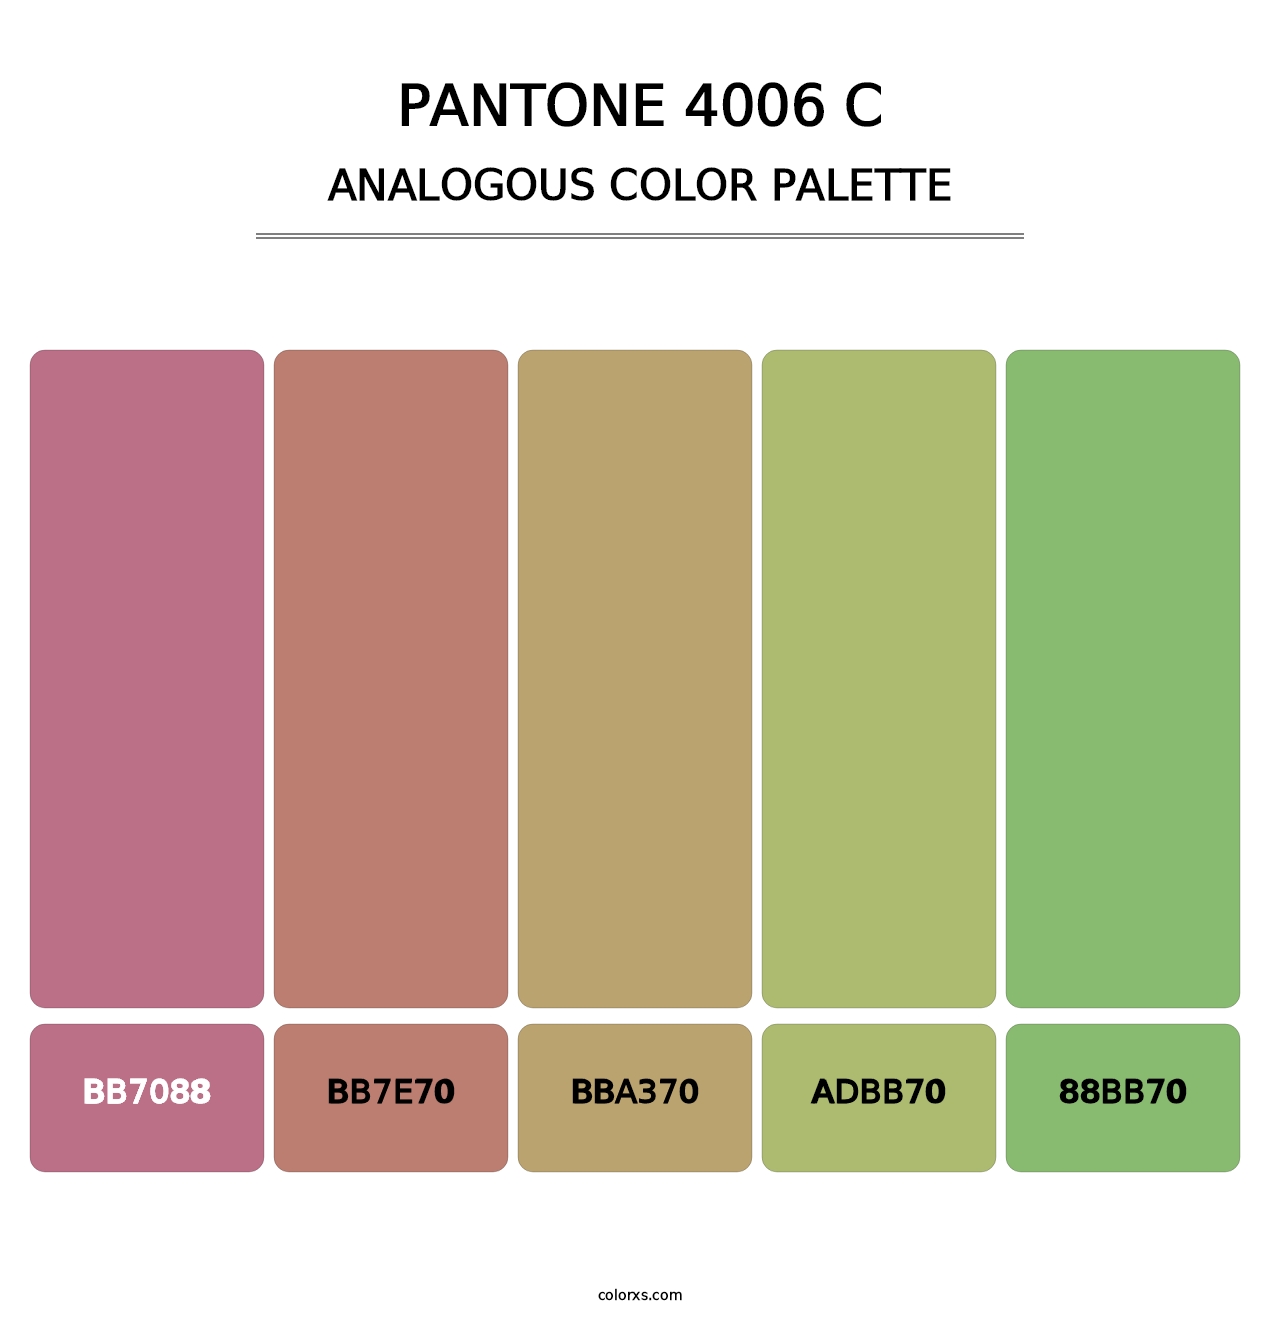 PANTONE 4006 C - Analogous Color Palette